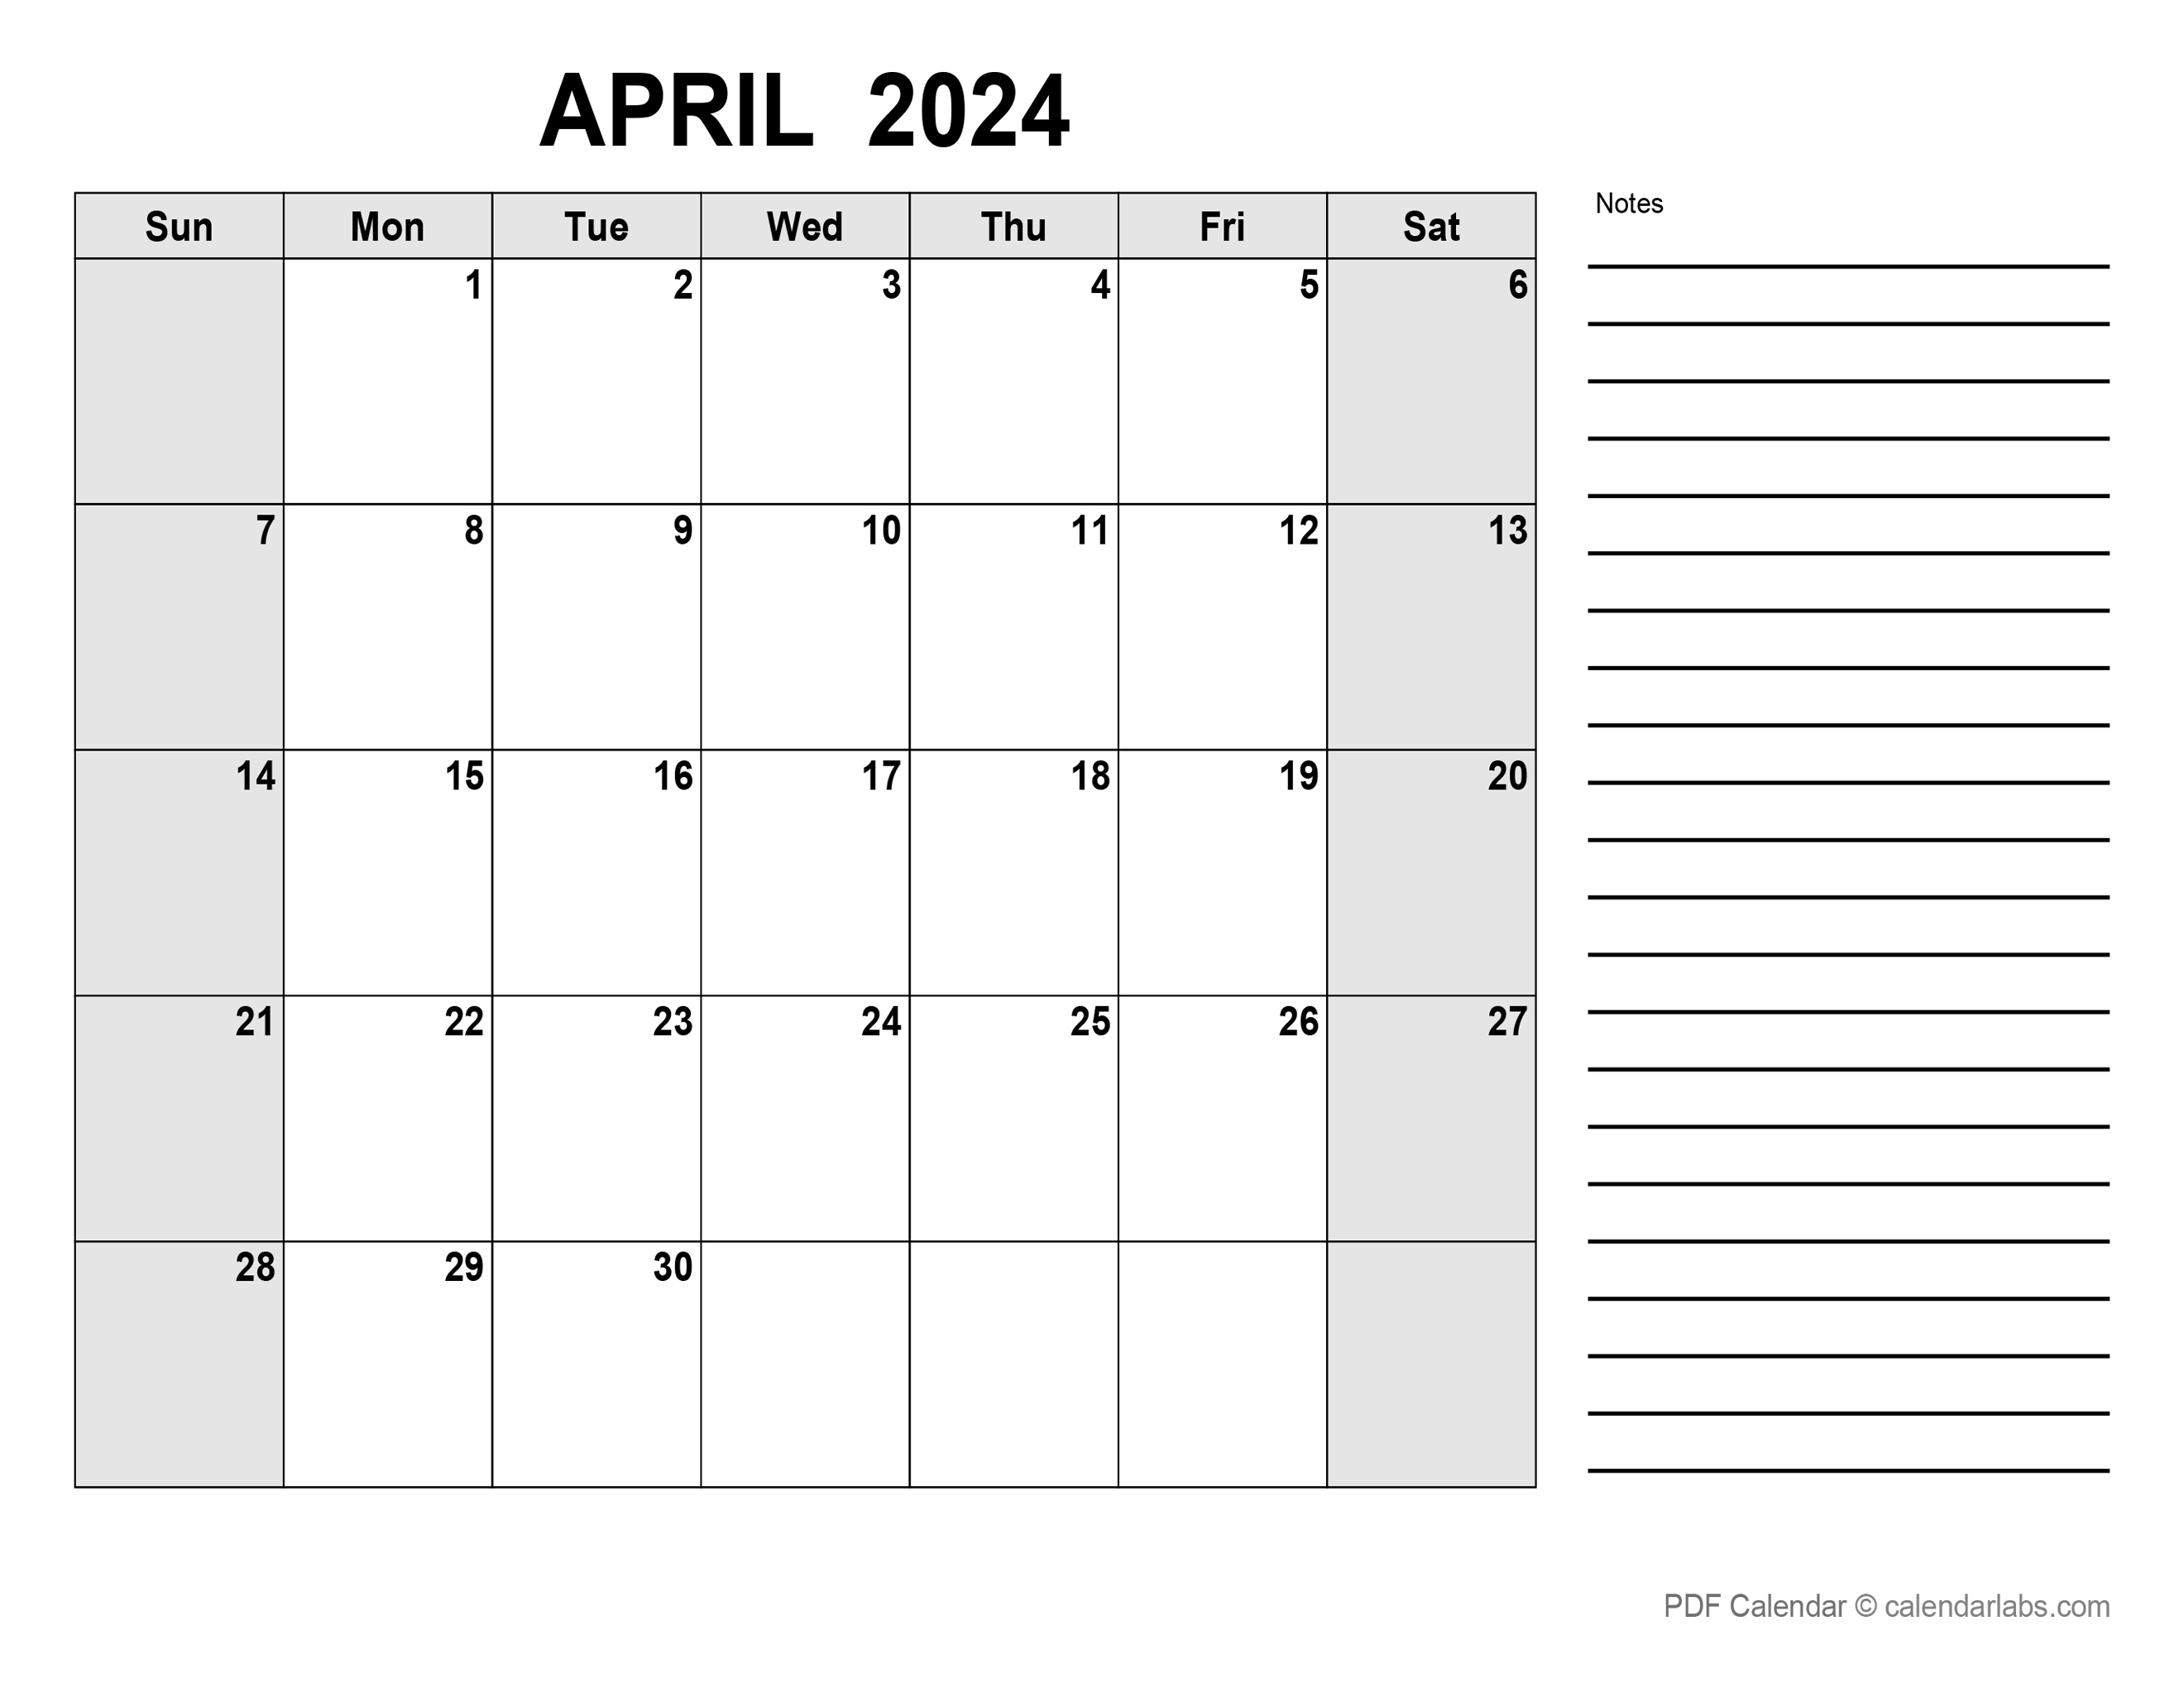 April 2024 Calendar with Holidays CalendarLabs